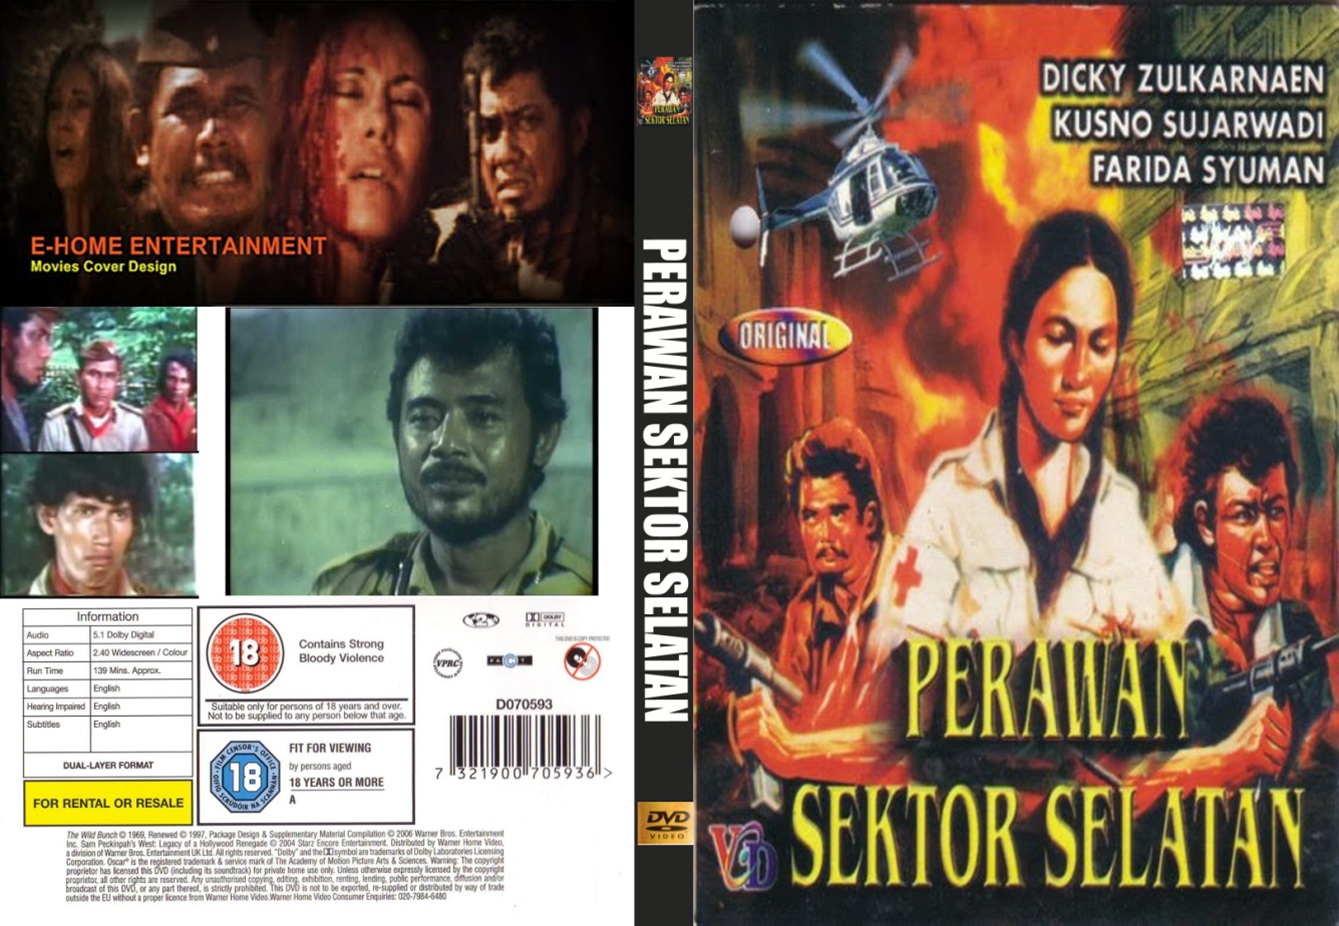 NAZI JERMAN Dijual DVD Film Sejarah Dan Perjuangan Indonesia